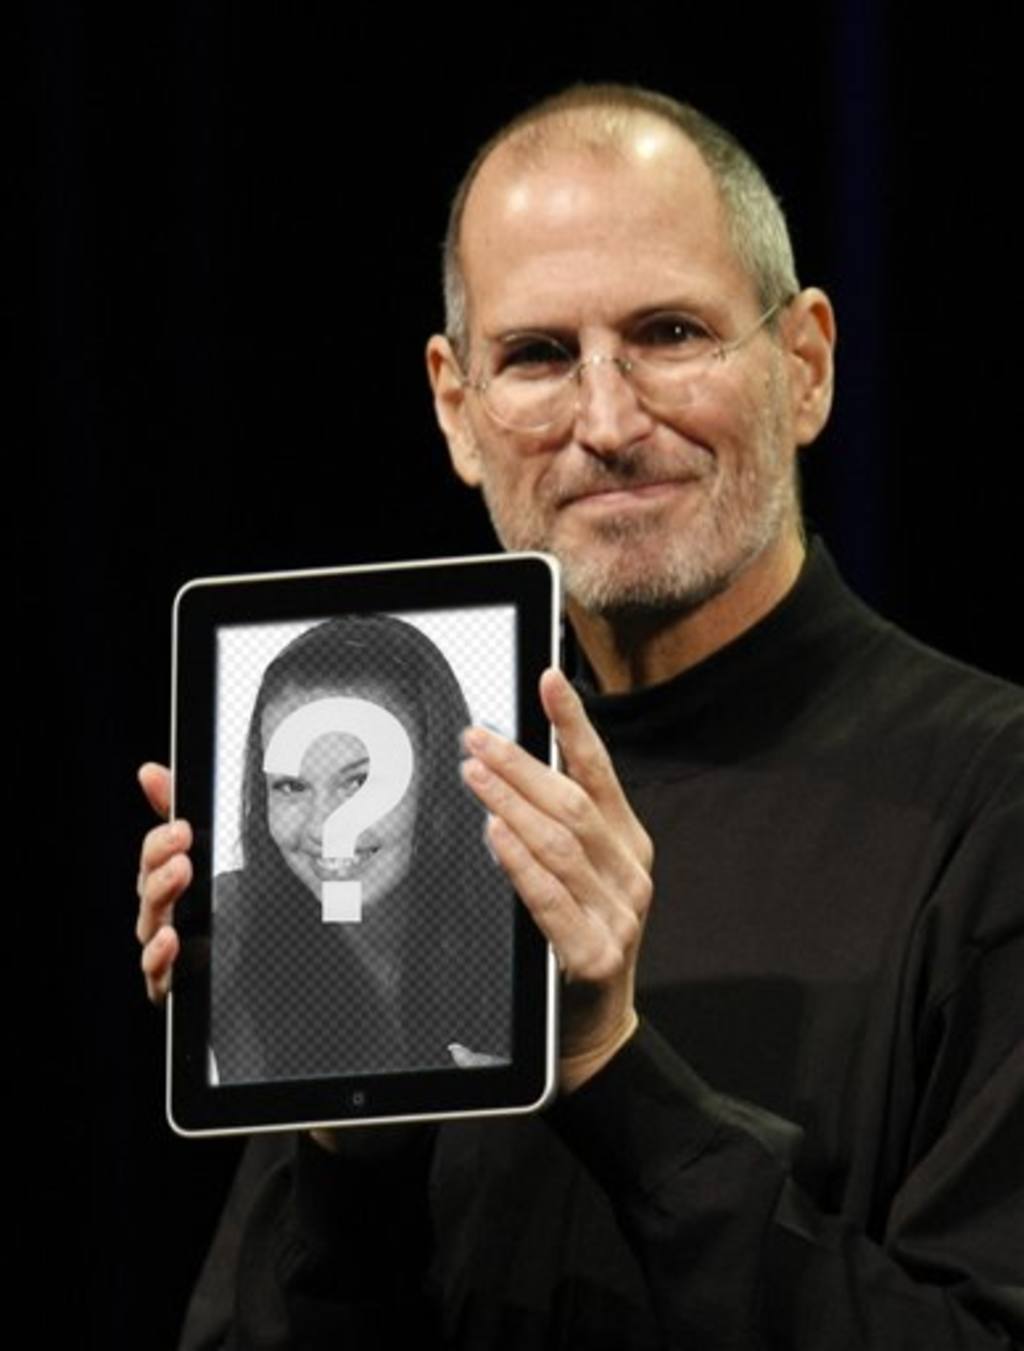 Fotomontage mit beliebten Charakteren. in dieser Montage, Steve Jobs, CEO von Apple lässt Ihre Fotos in einem..